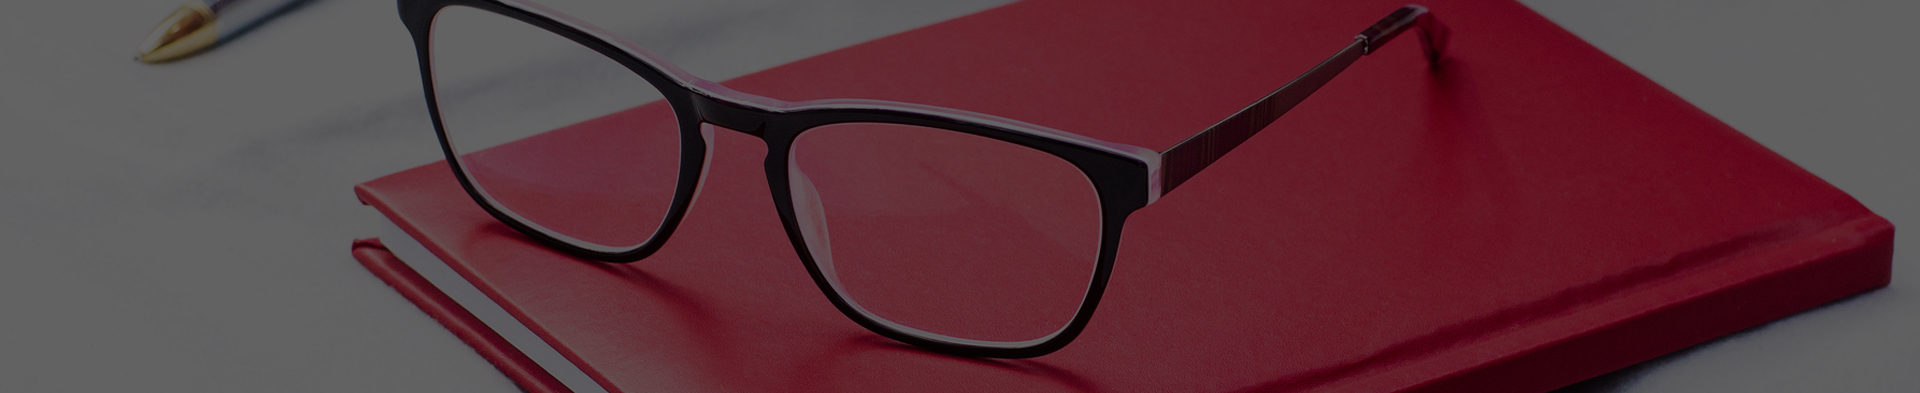 Multifokální brýle – pořiďte si brýle dva v jednom